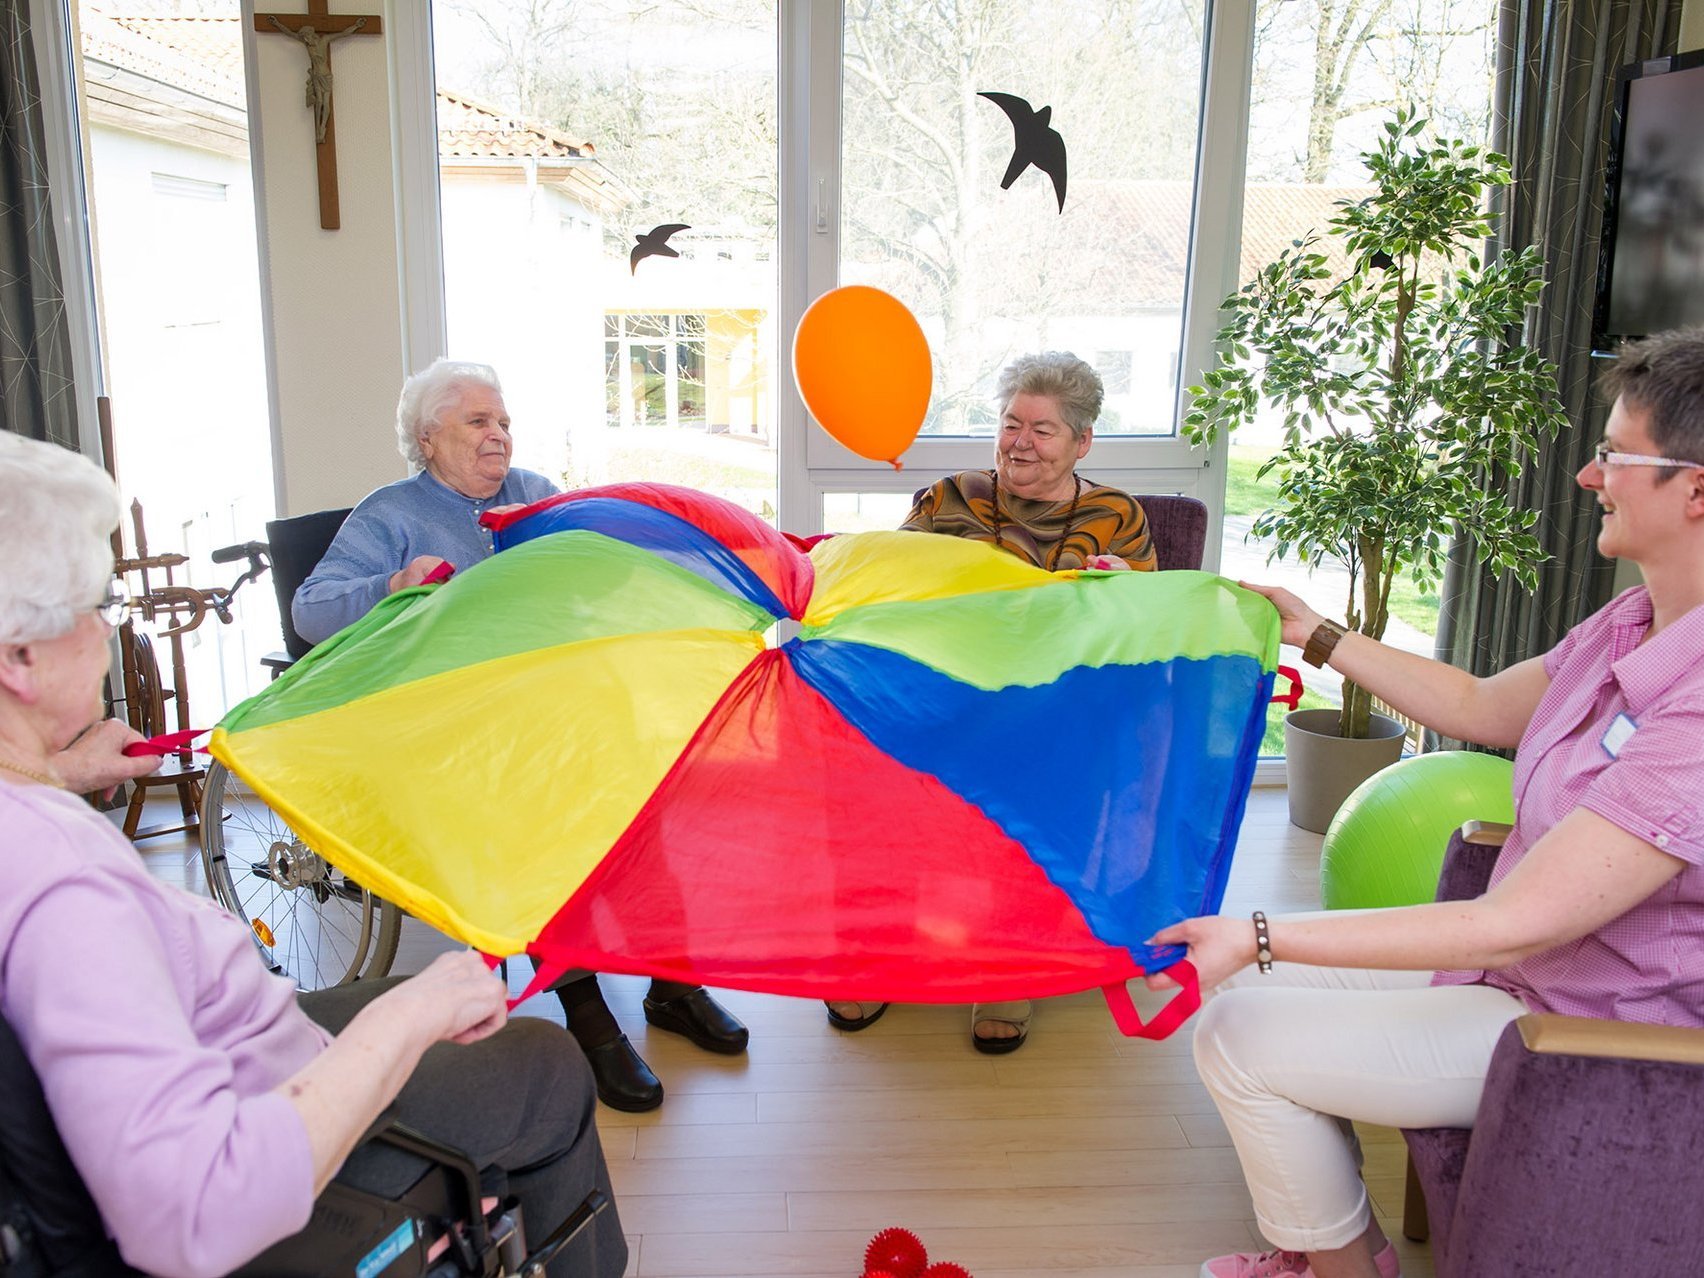 Bewohner sitzen im Kreis und spielen mit einem bunten Tuch und einem Luftballon 